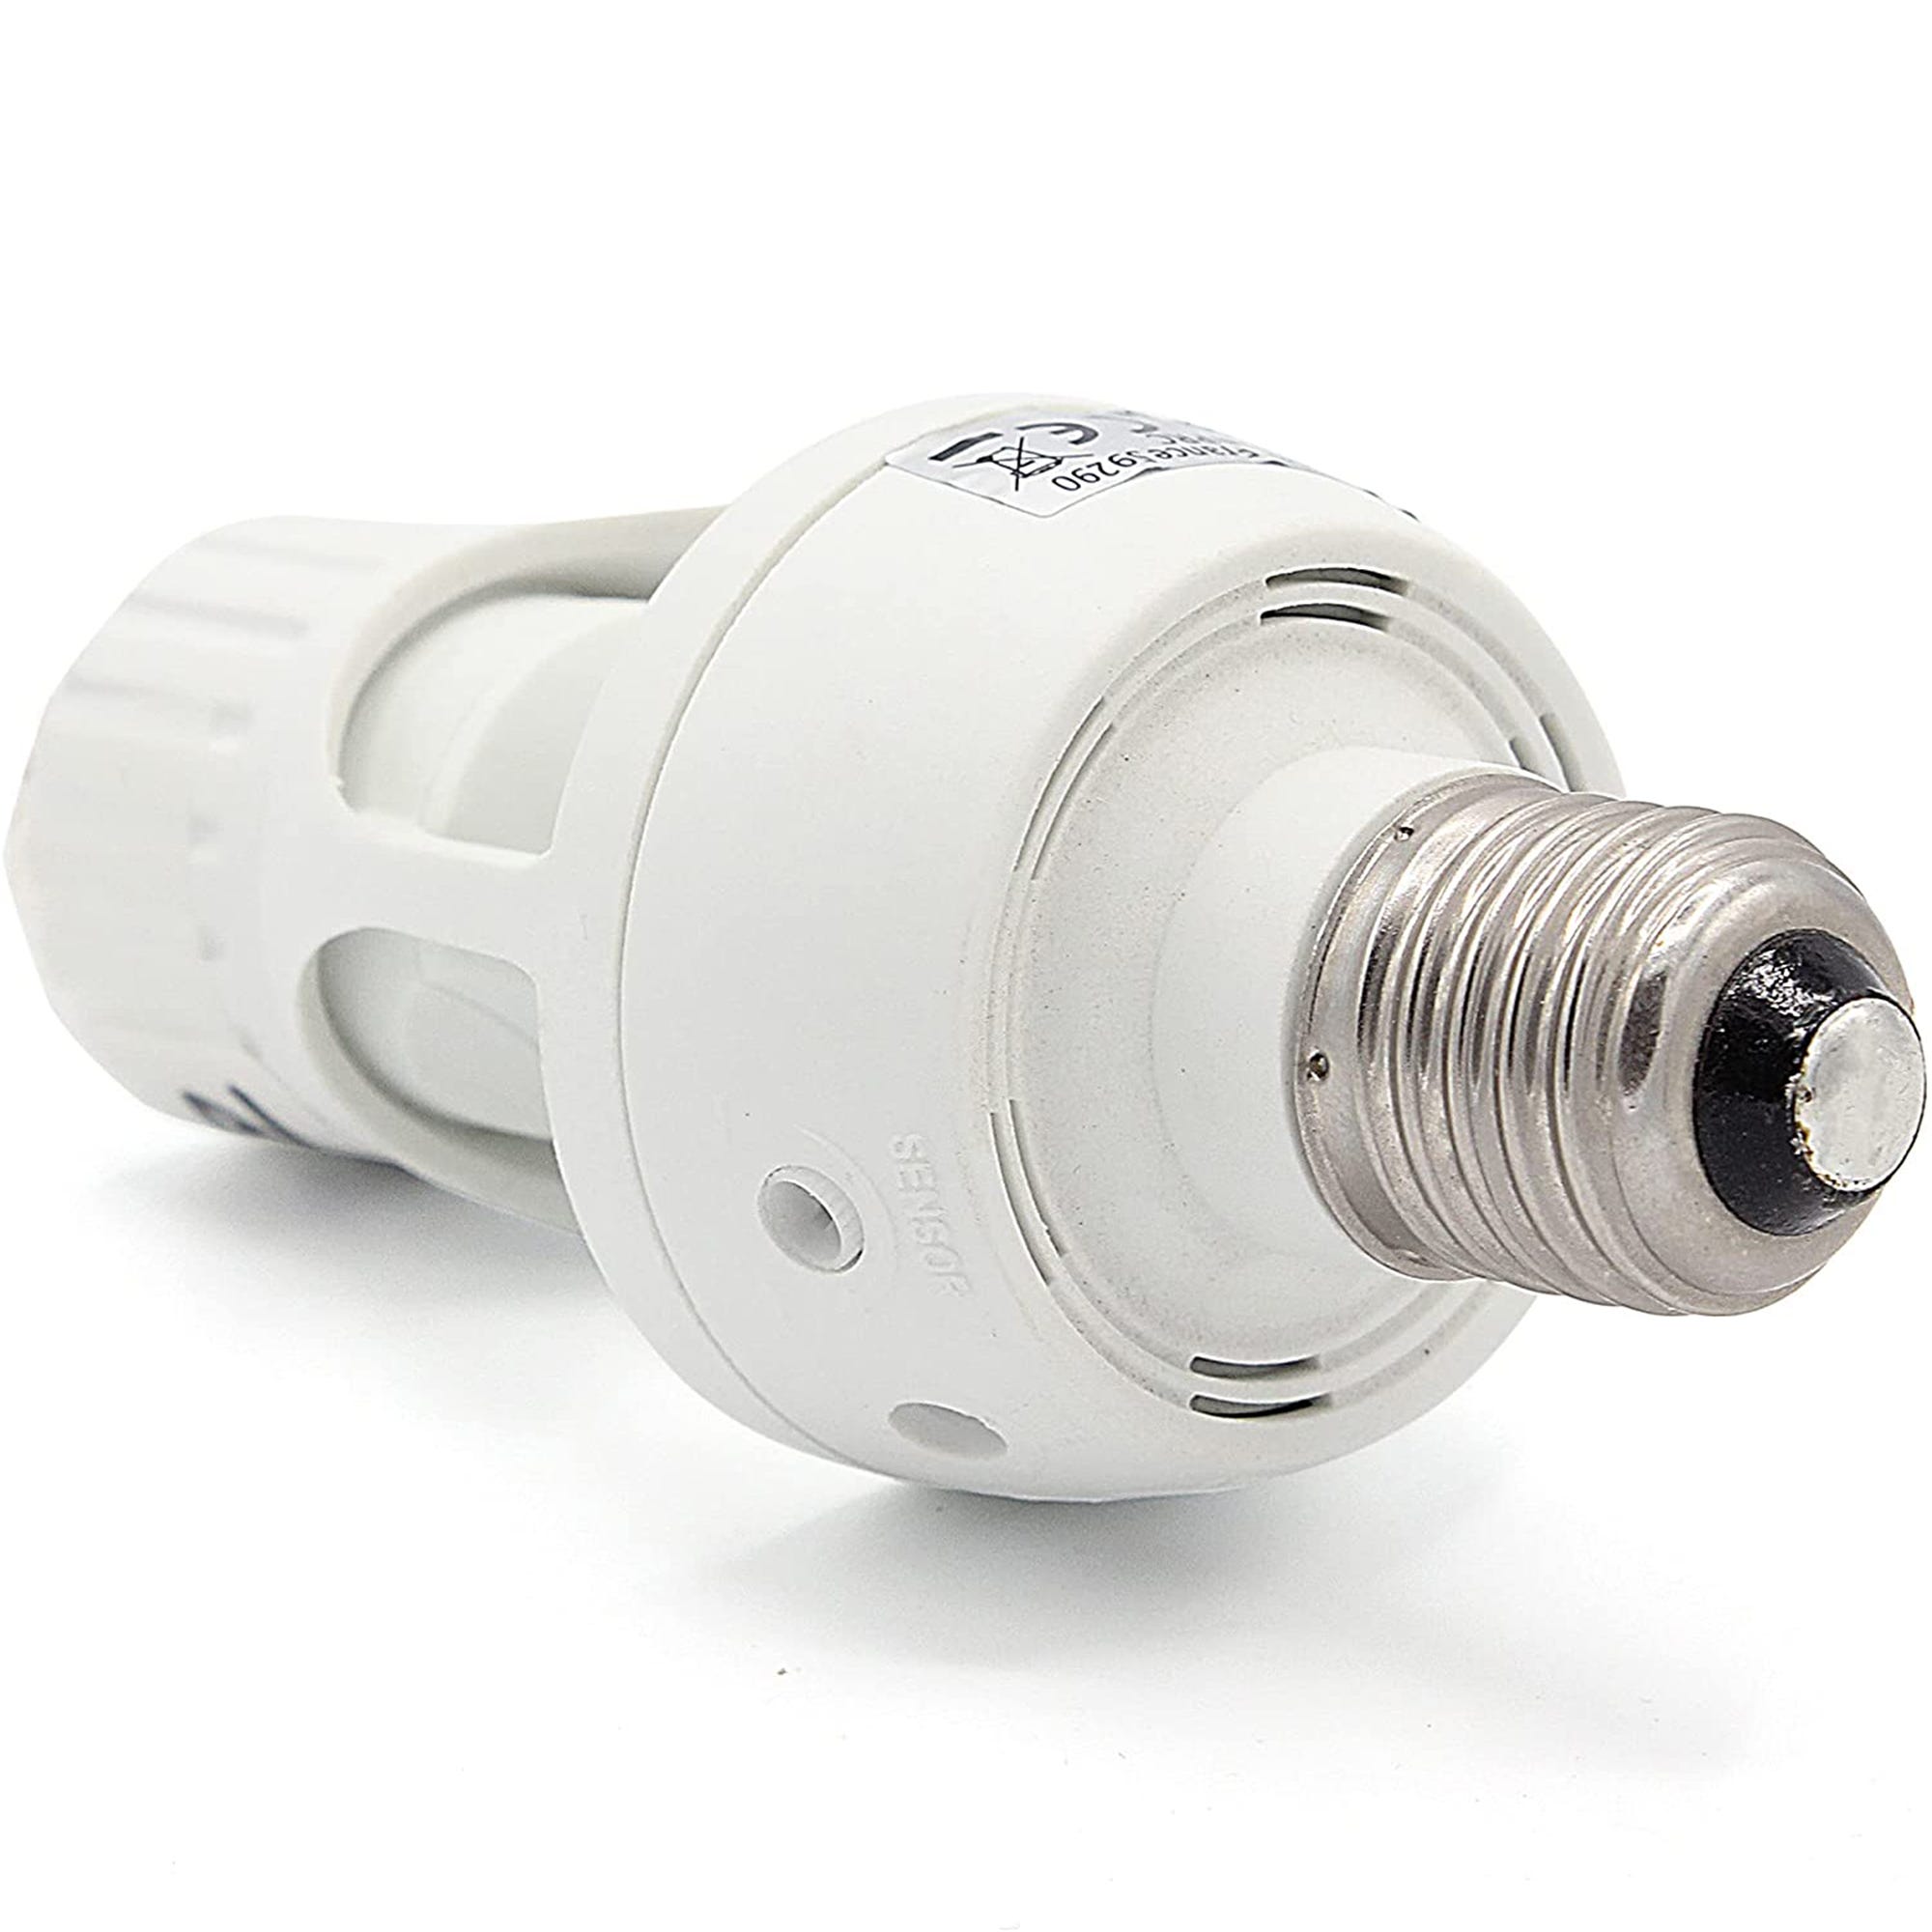 FISHTEC Douille Ampoule E27 - Detecteur de Mouvements PIR - Compatible  Ampoule LED - Allumage Automatique - 3 Reglages - Blanc